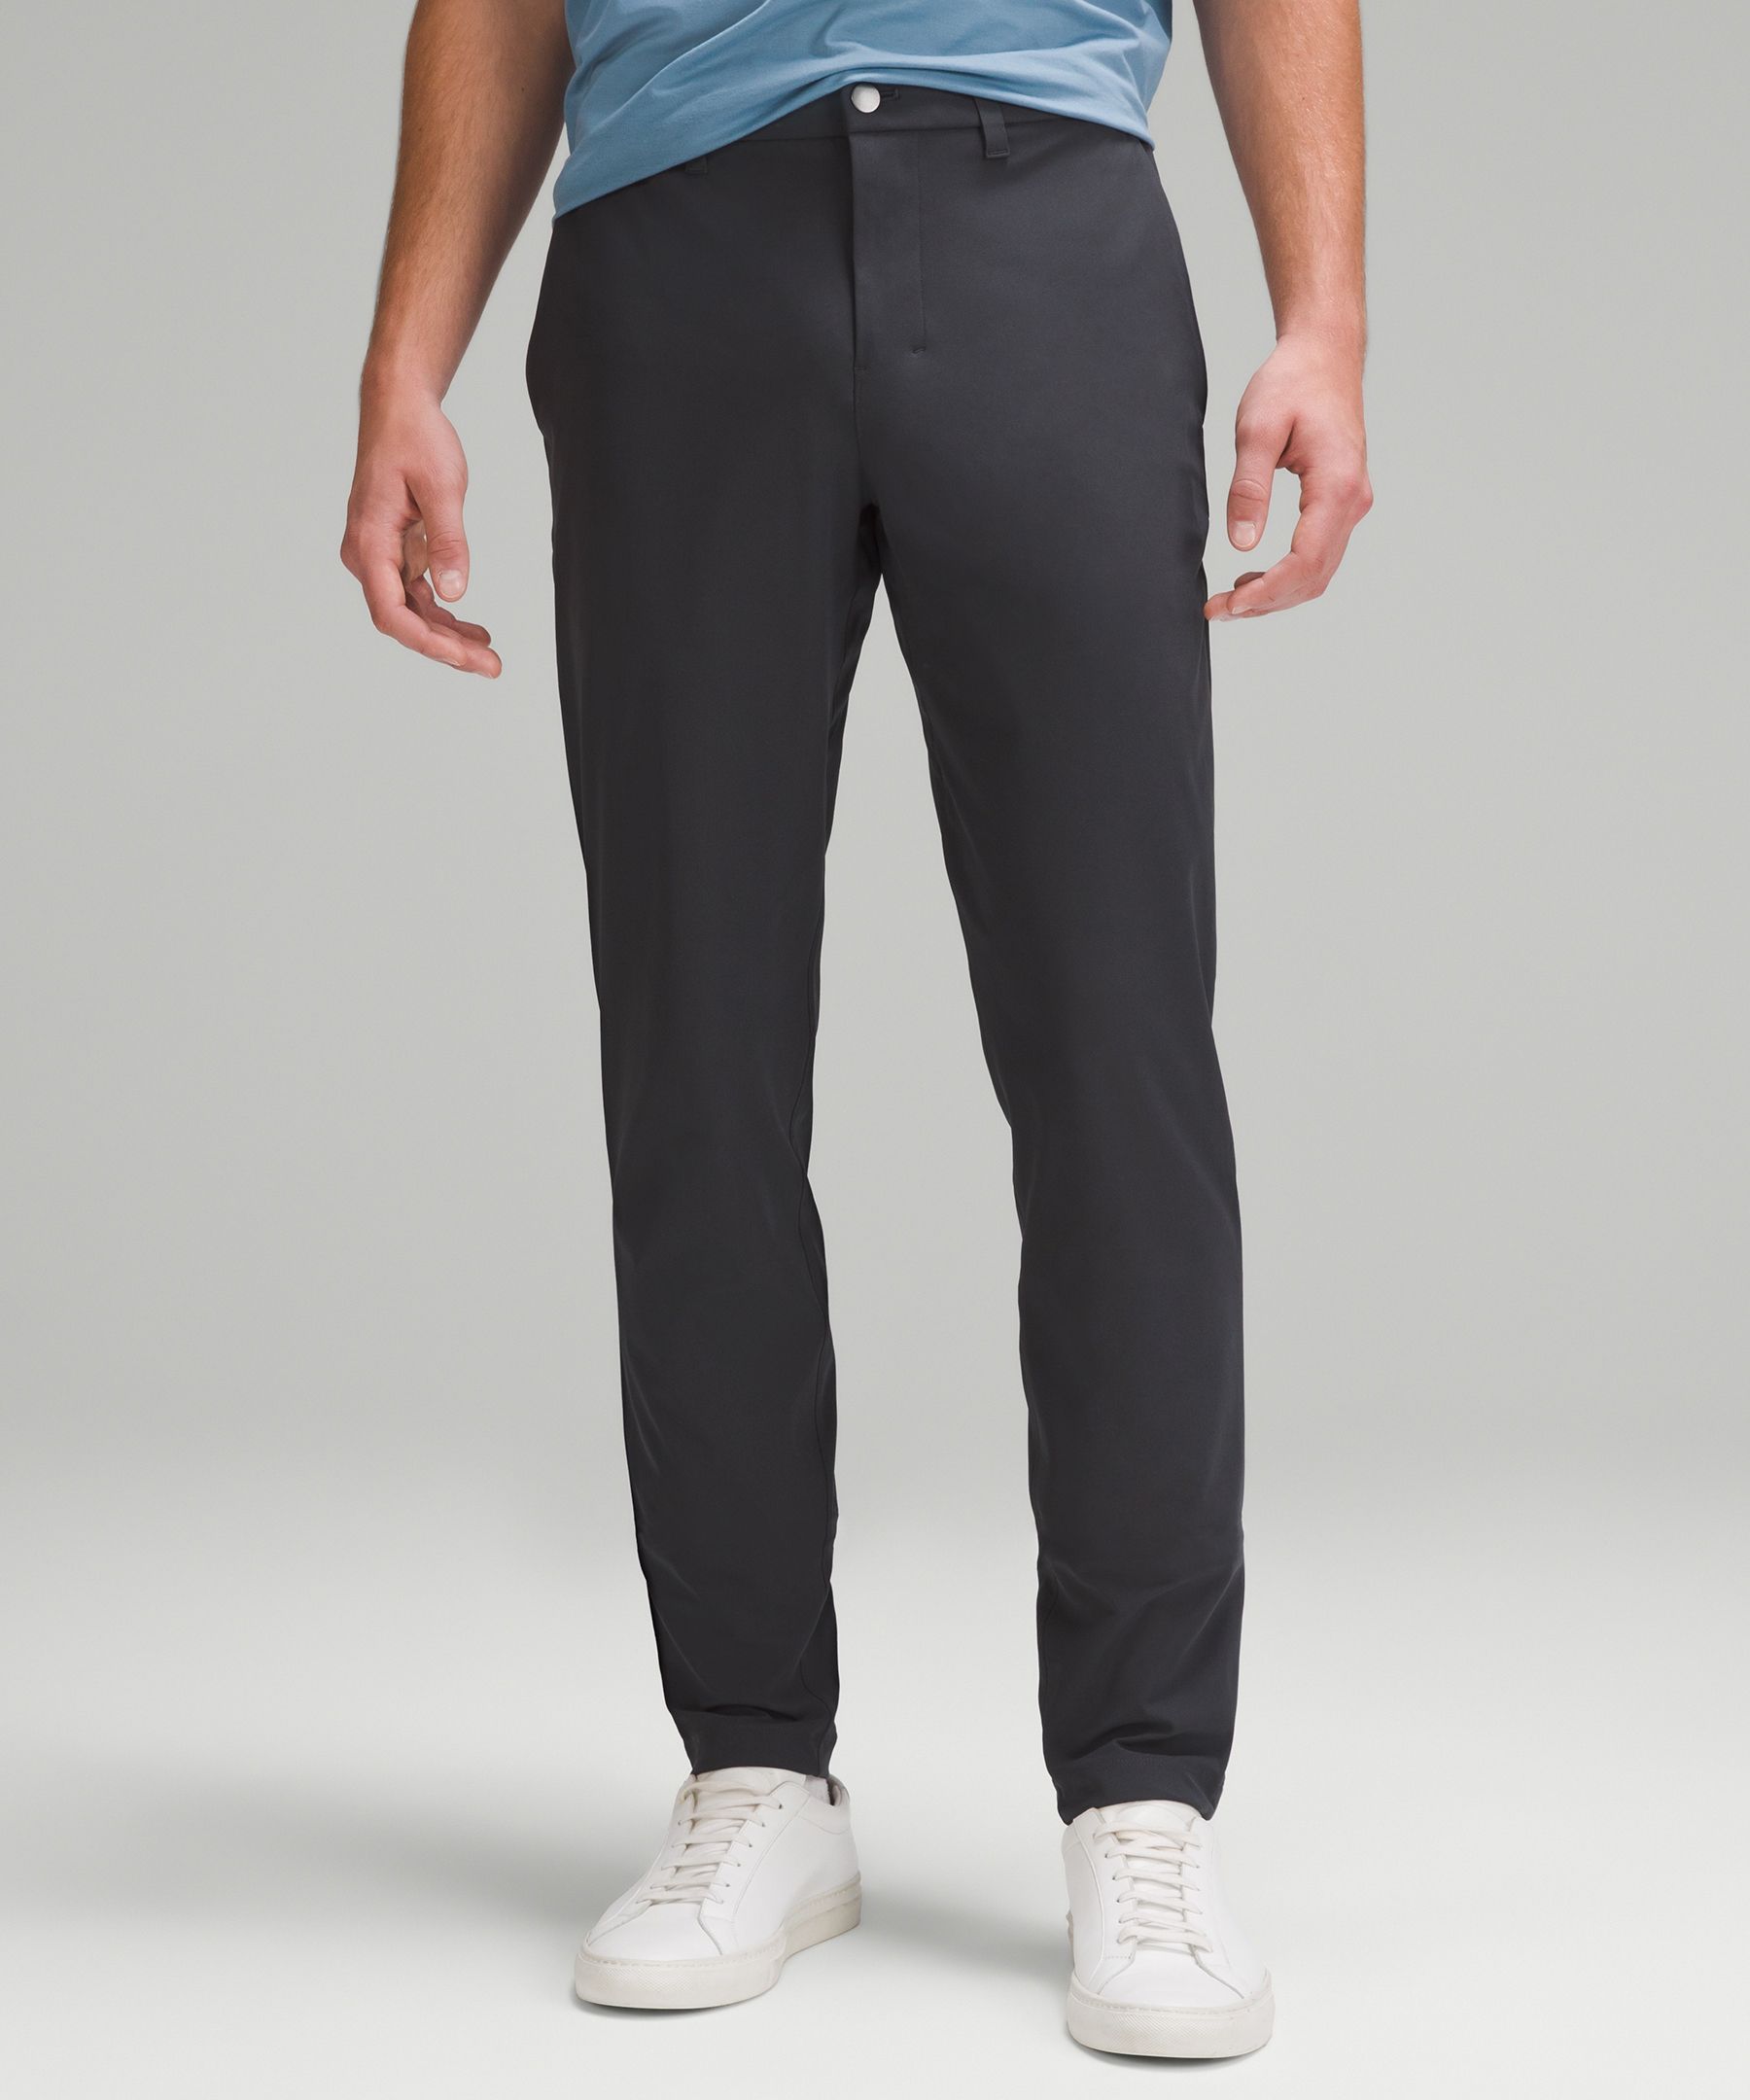 ABC Slim-Fit Trouser 37L *Warpstreme, Men's Trousers